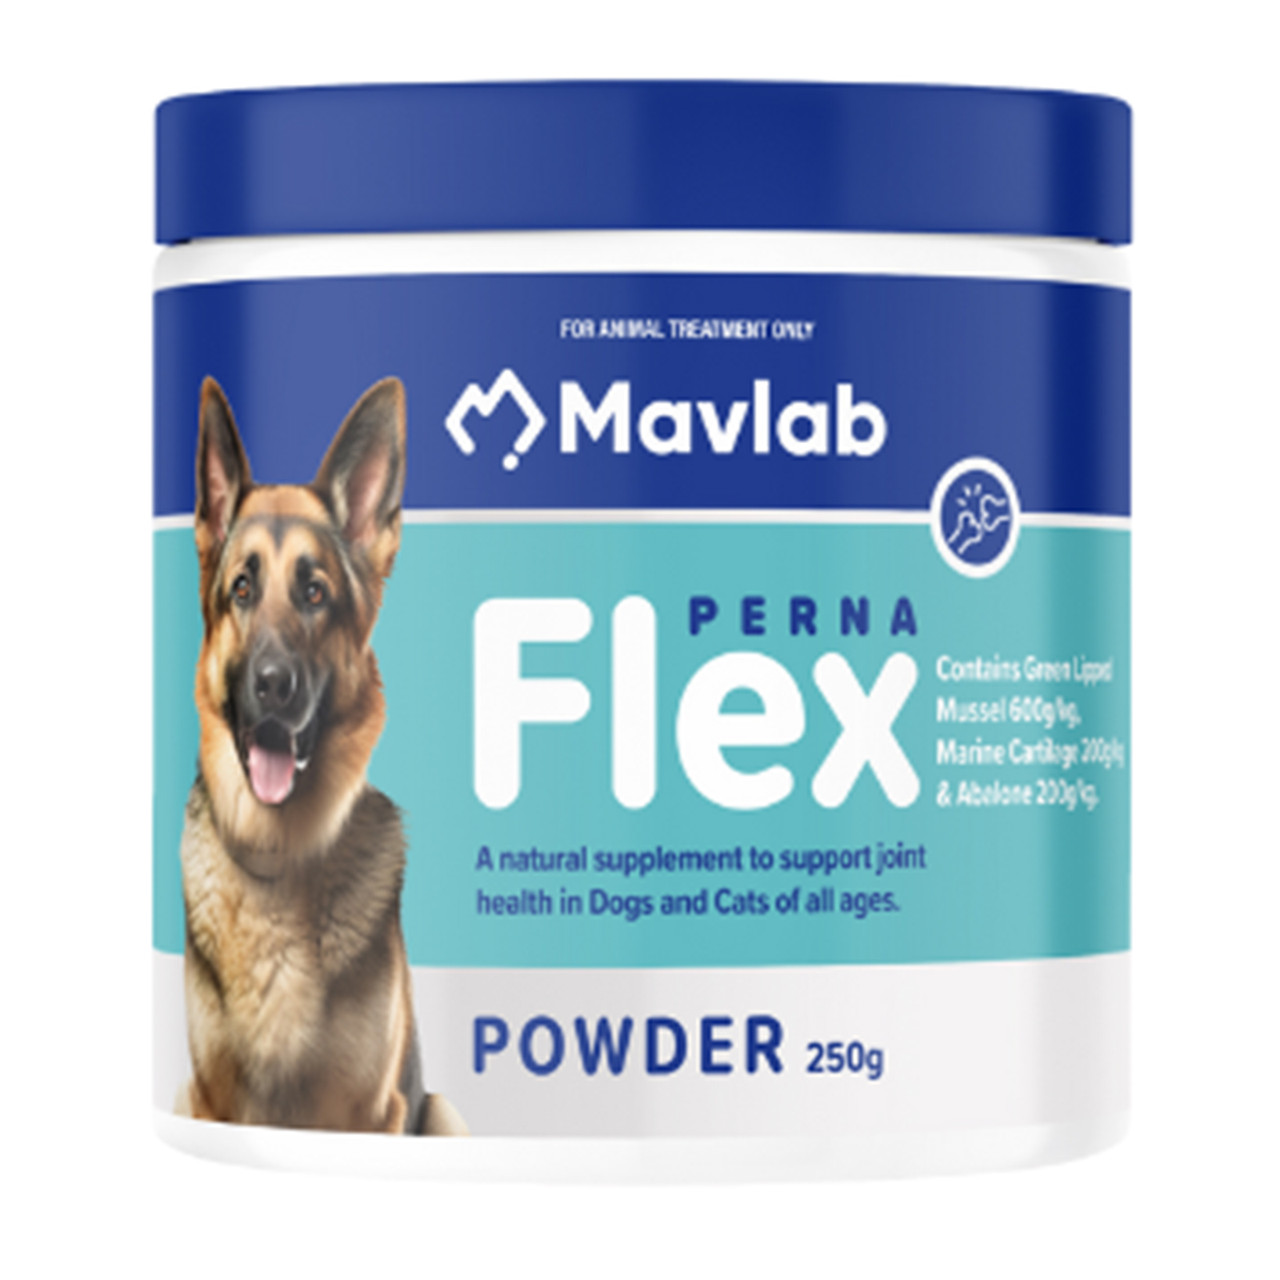 20% rabat på Mavlab PernaFlex Joint Health Supplement Powder til hunde og katte 250g (8.8 oz) hos Atlantic Pet Products